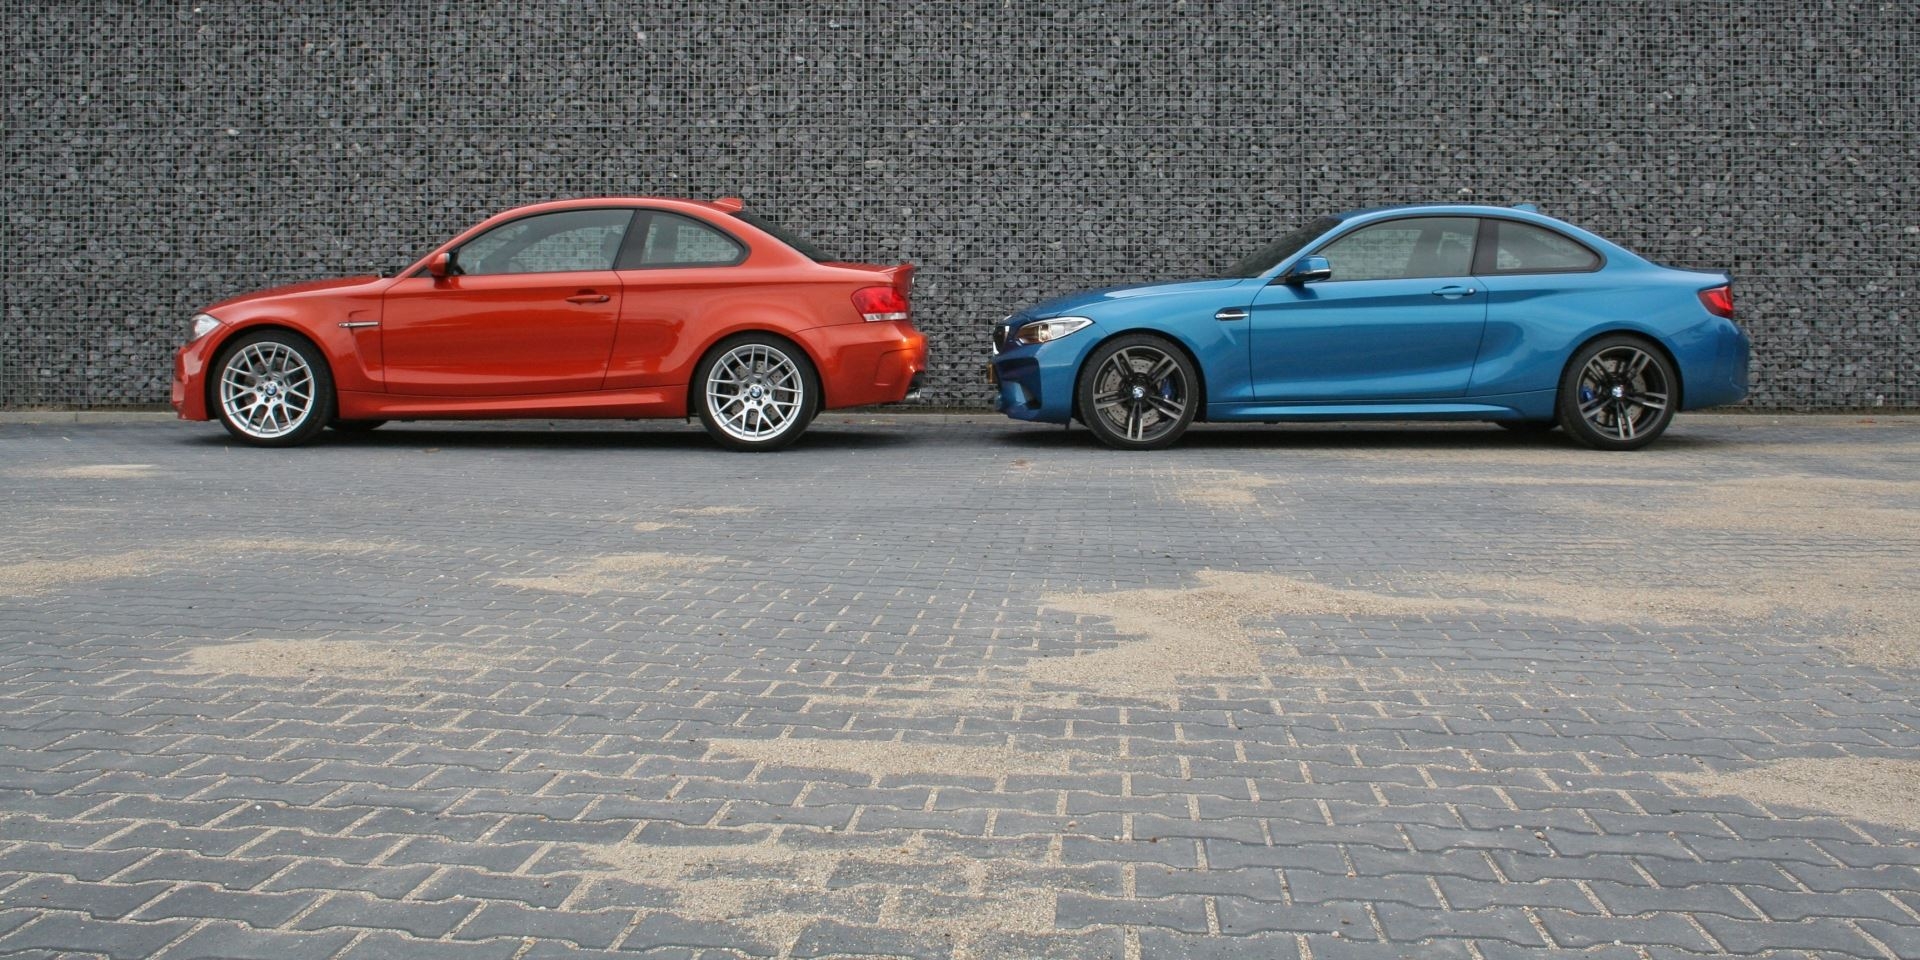 BMW 1 Serie M Coupé versus BMW M2 Coupé